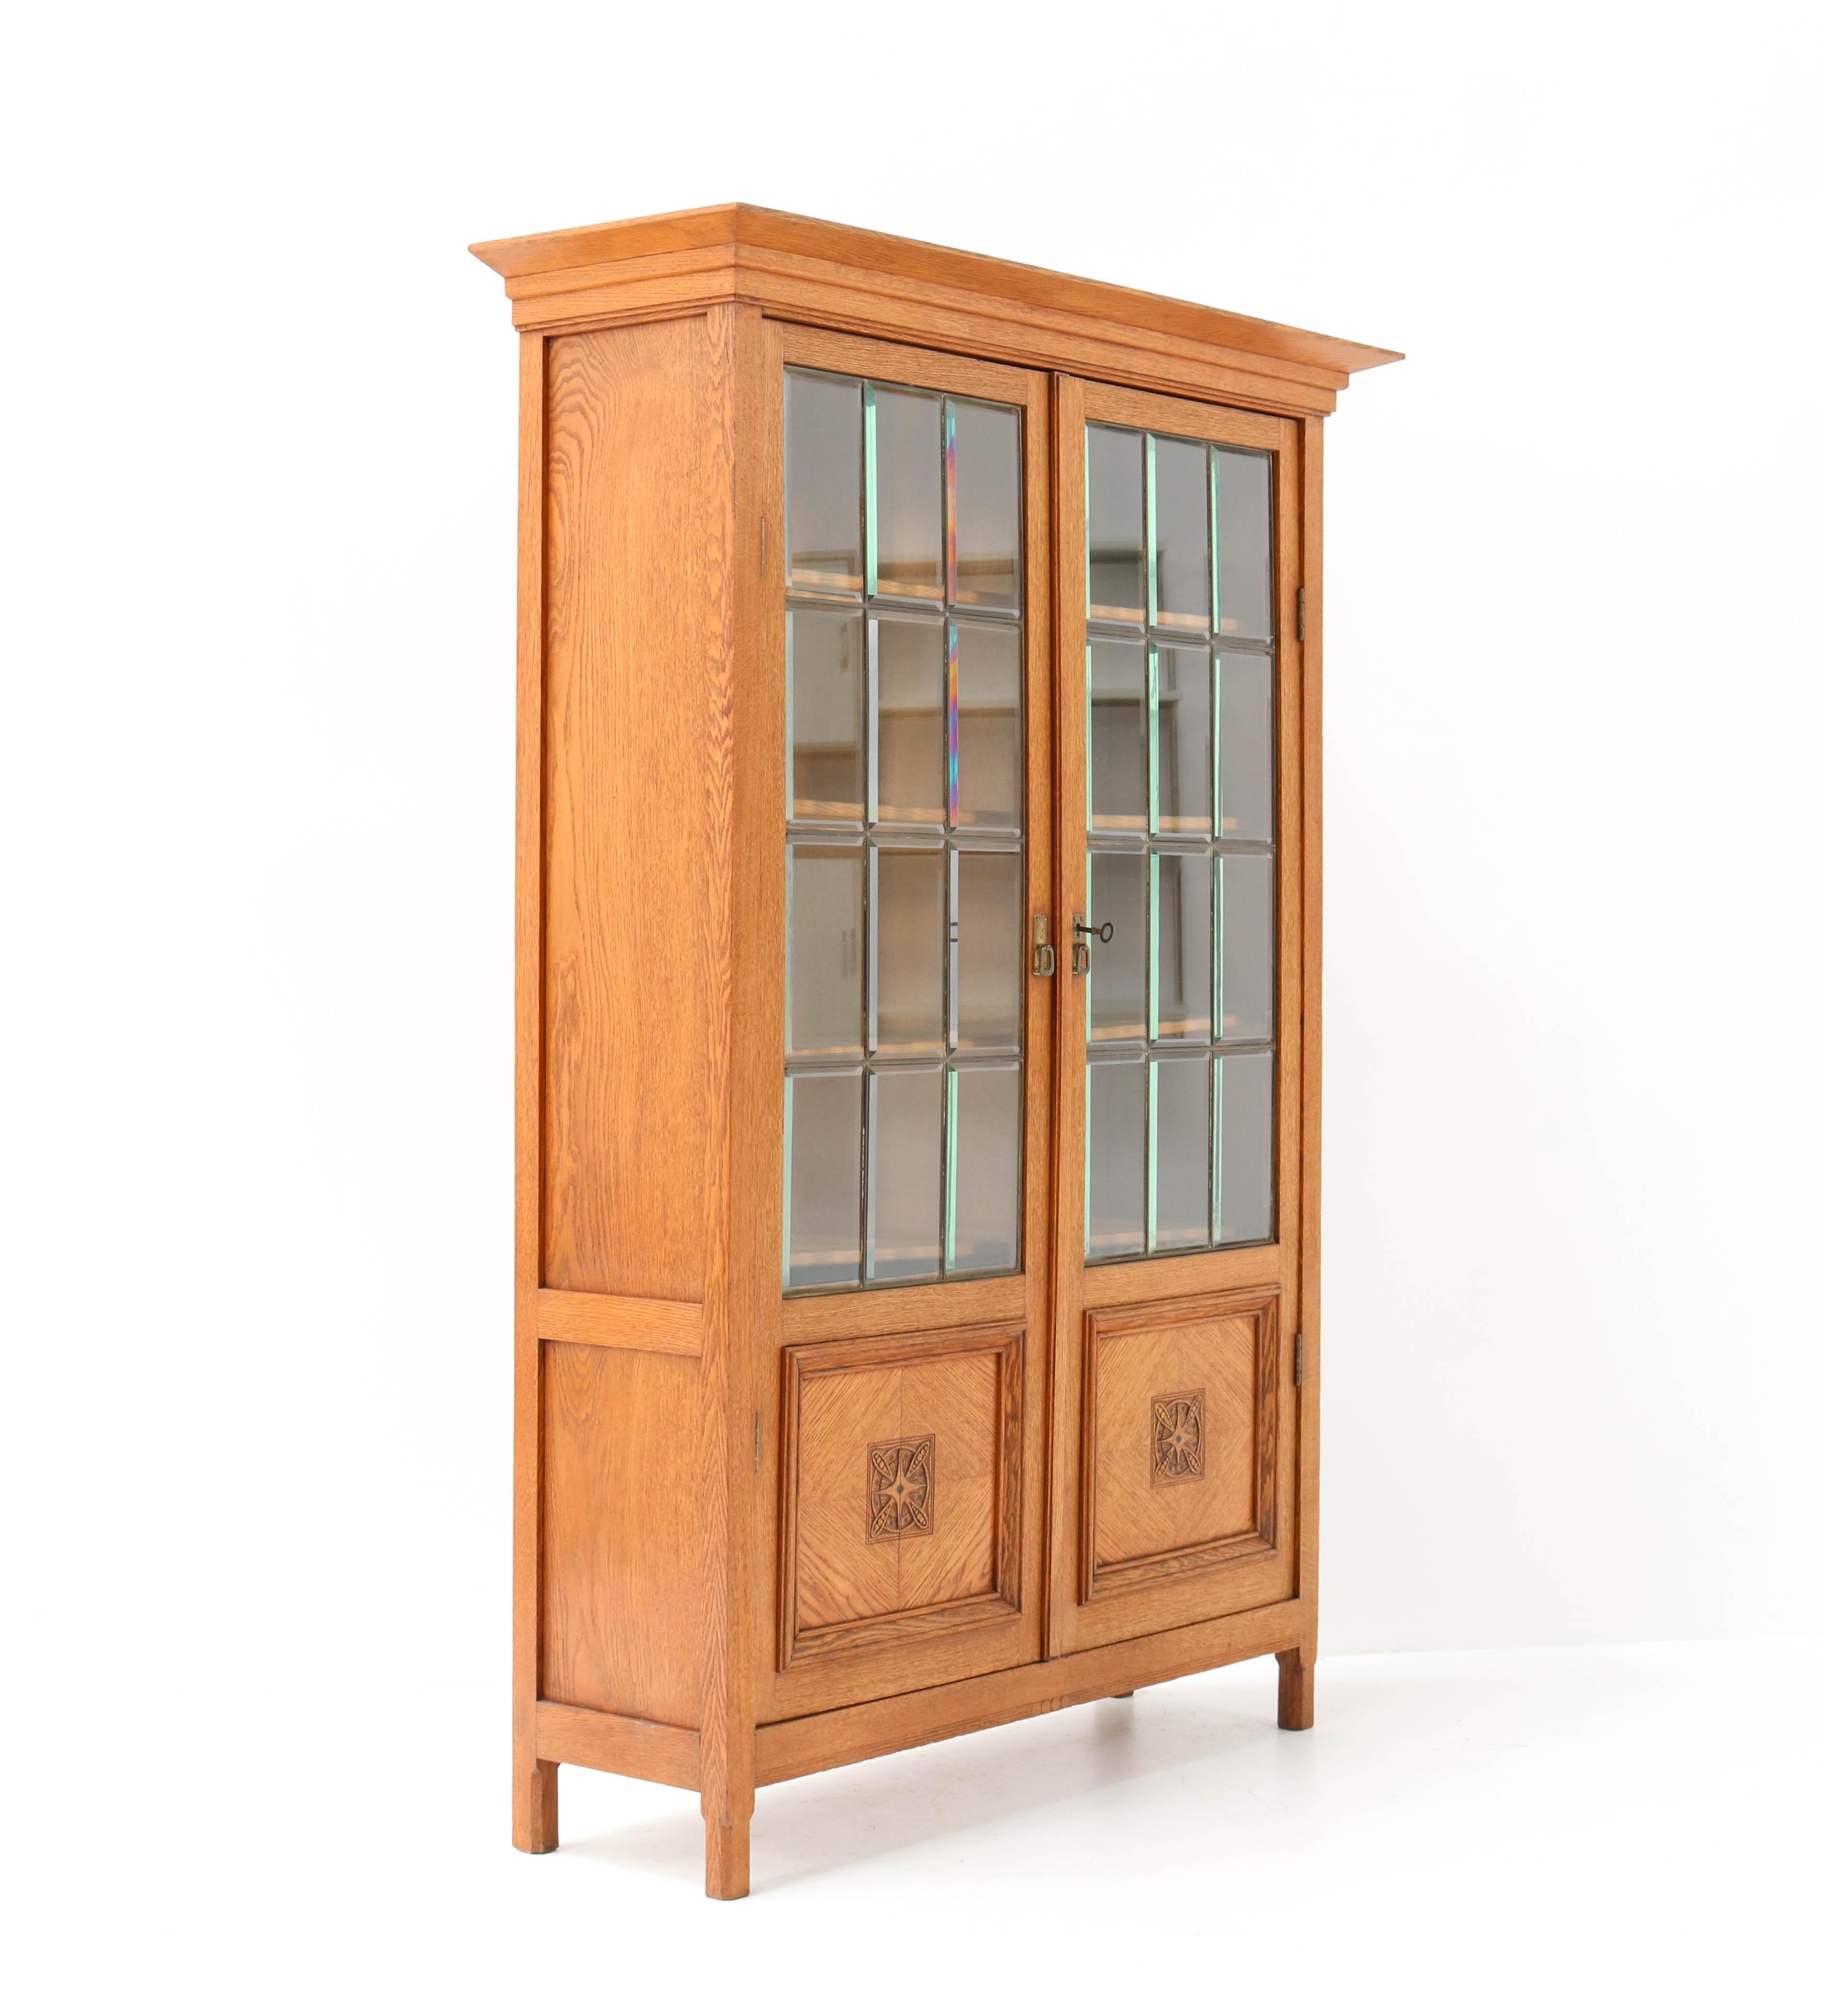 Dutch Oak Art Nouveau Arts & Crafts Bookcase Attributed to K.P.C. de Bazel, 1900s